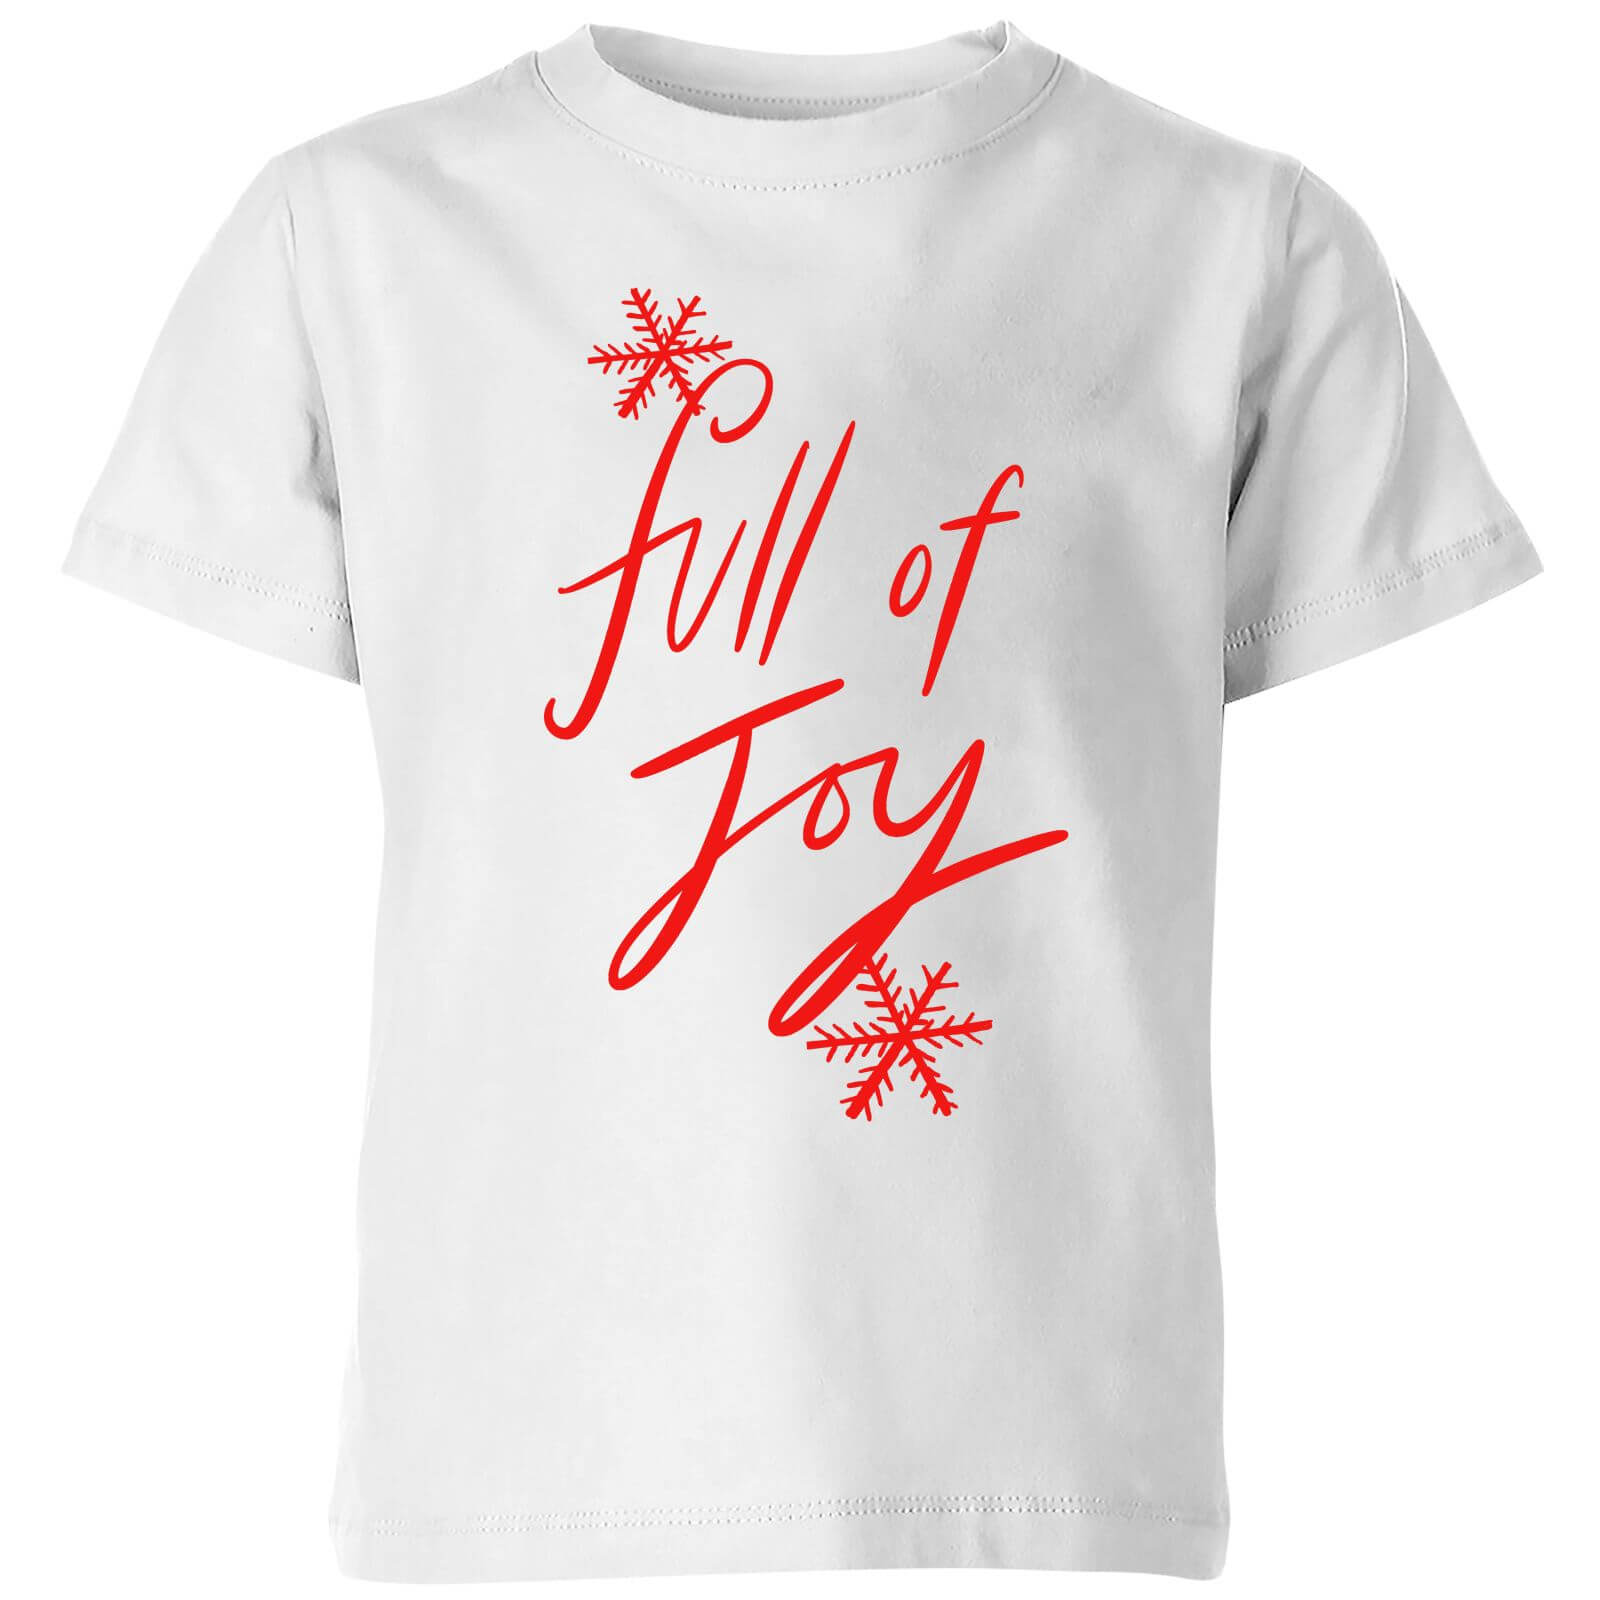 Full Of Joy Kids' T-Shirt - White - 3-4 Years - White